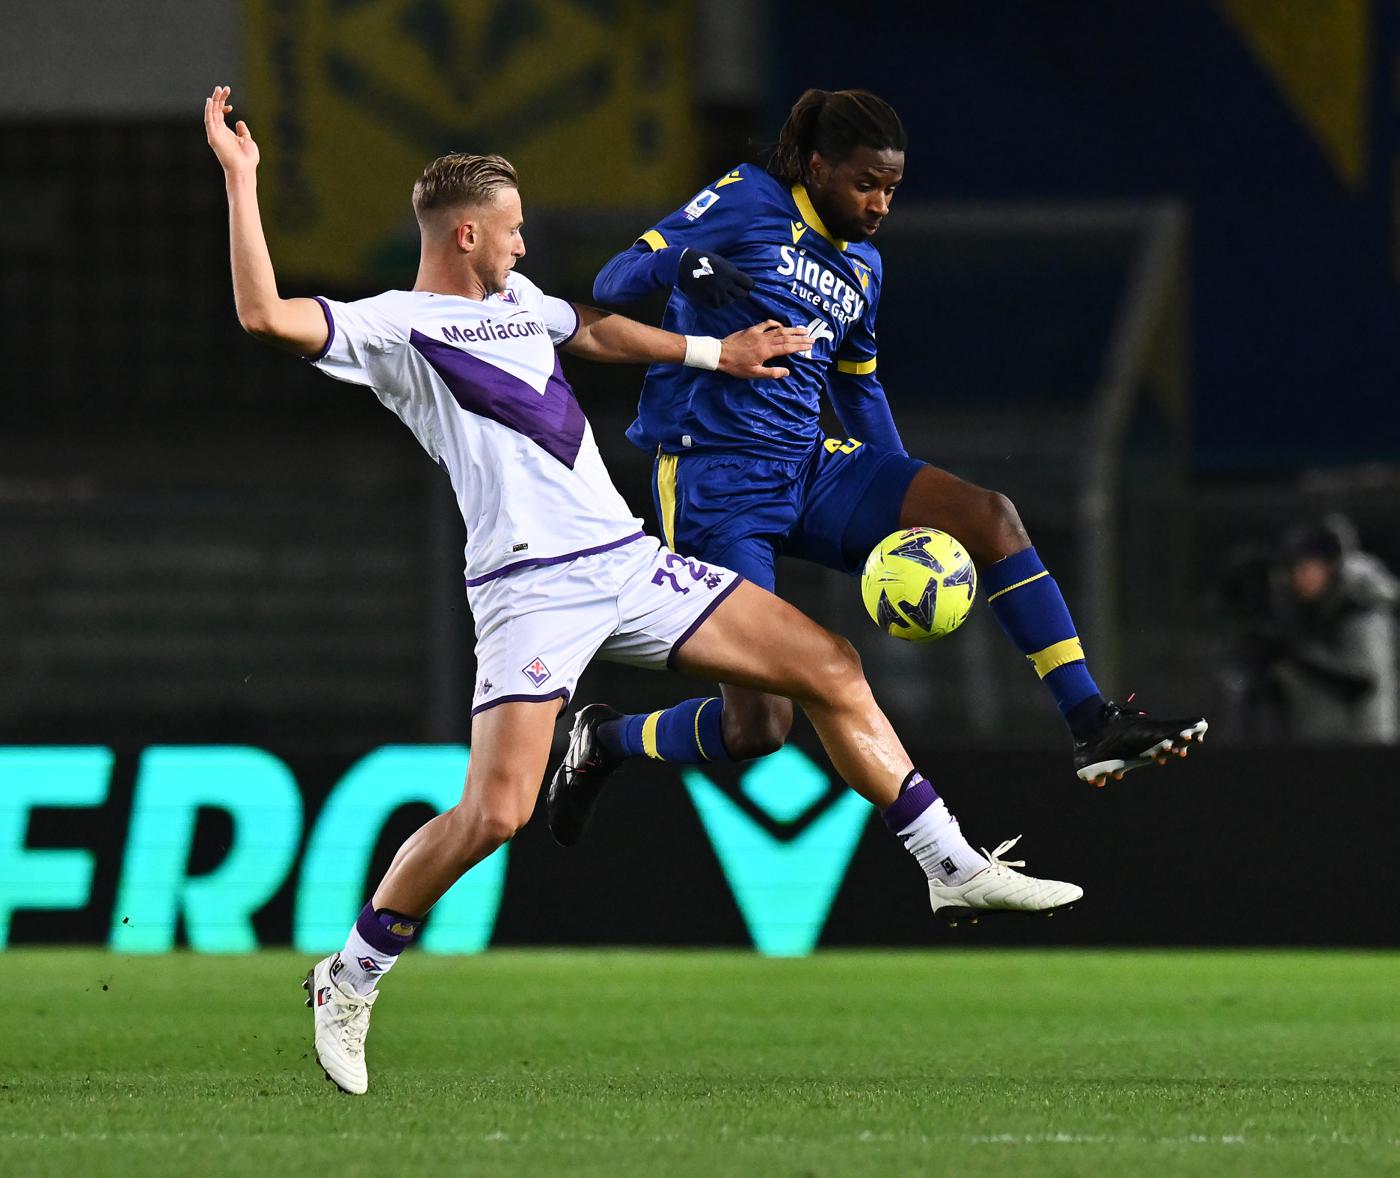 Verona vs Fiorentina - 0-3. Mistrzostwa Włoch, runda 24. Przegląd meczu, statystyki.